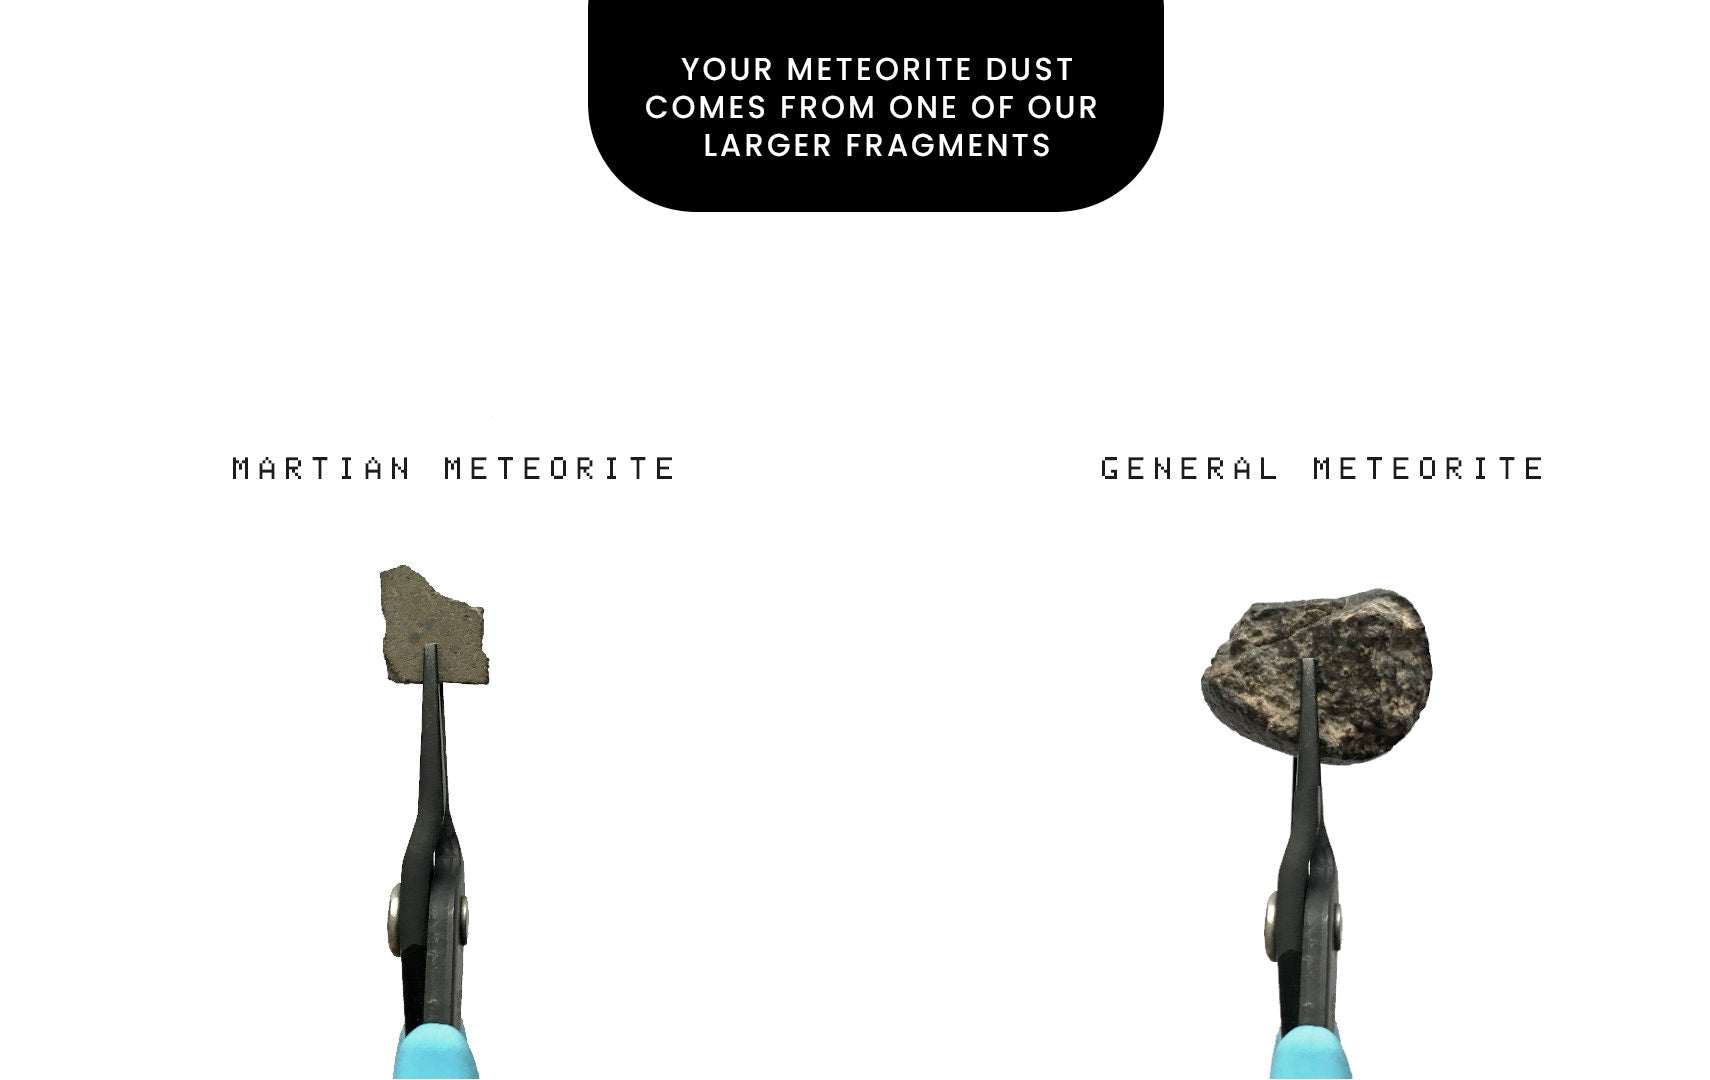 Meteorite Dust Relic Key Pendant - Dystopian Artifact - Dune Inspired Cyberpunk / Minimalist Jewelry - Men's/Women's Sci-fi Necklace